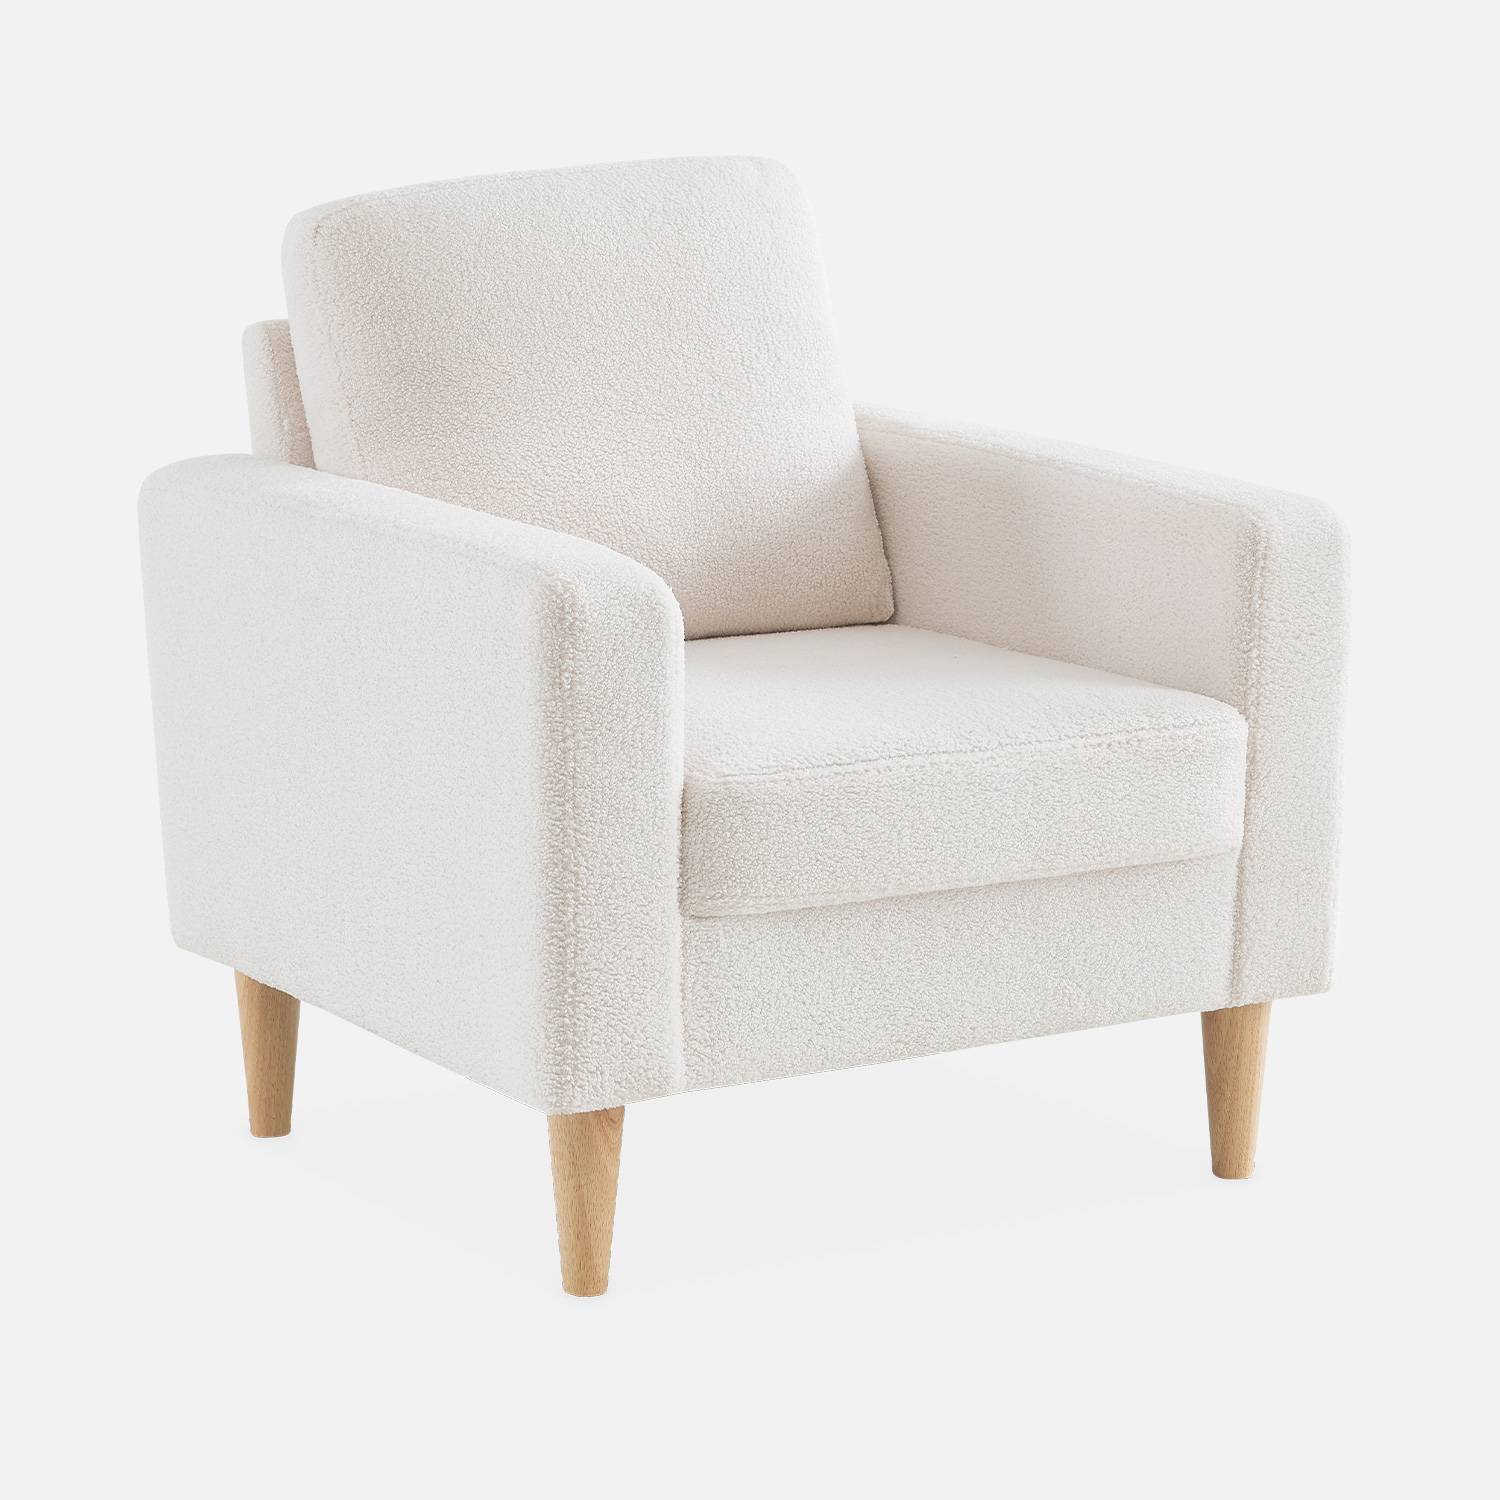 Witte fauteuil van boucléstof - Bjorn - 1-zits sofa, rechte houten poten Photo3